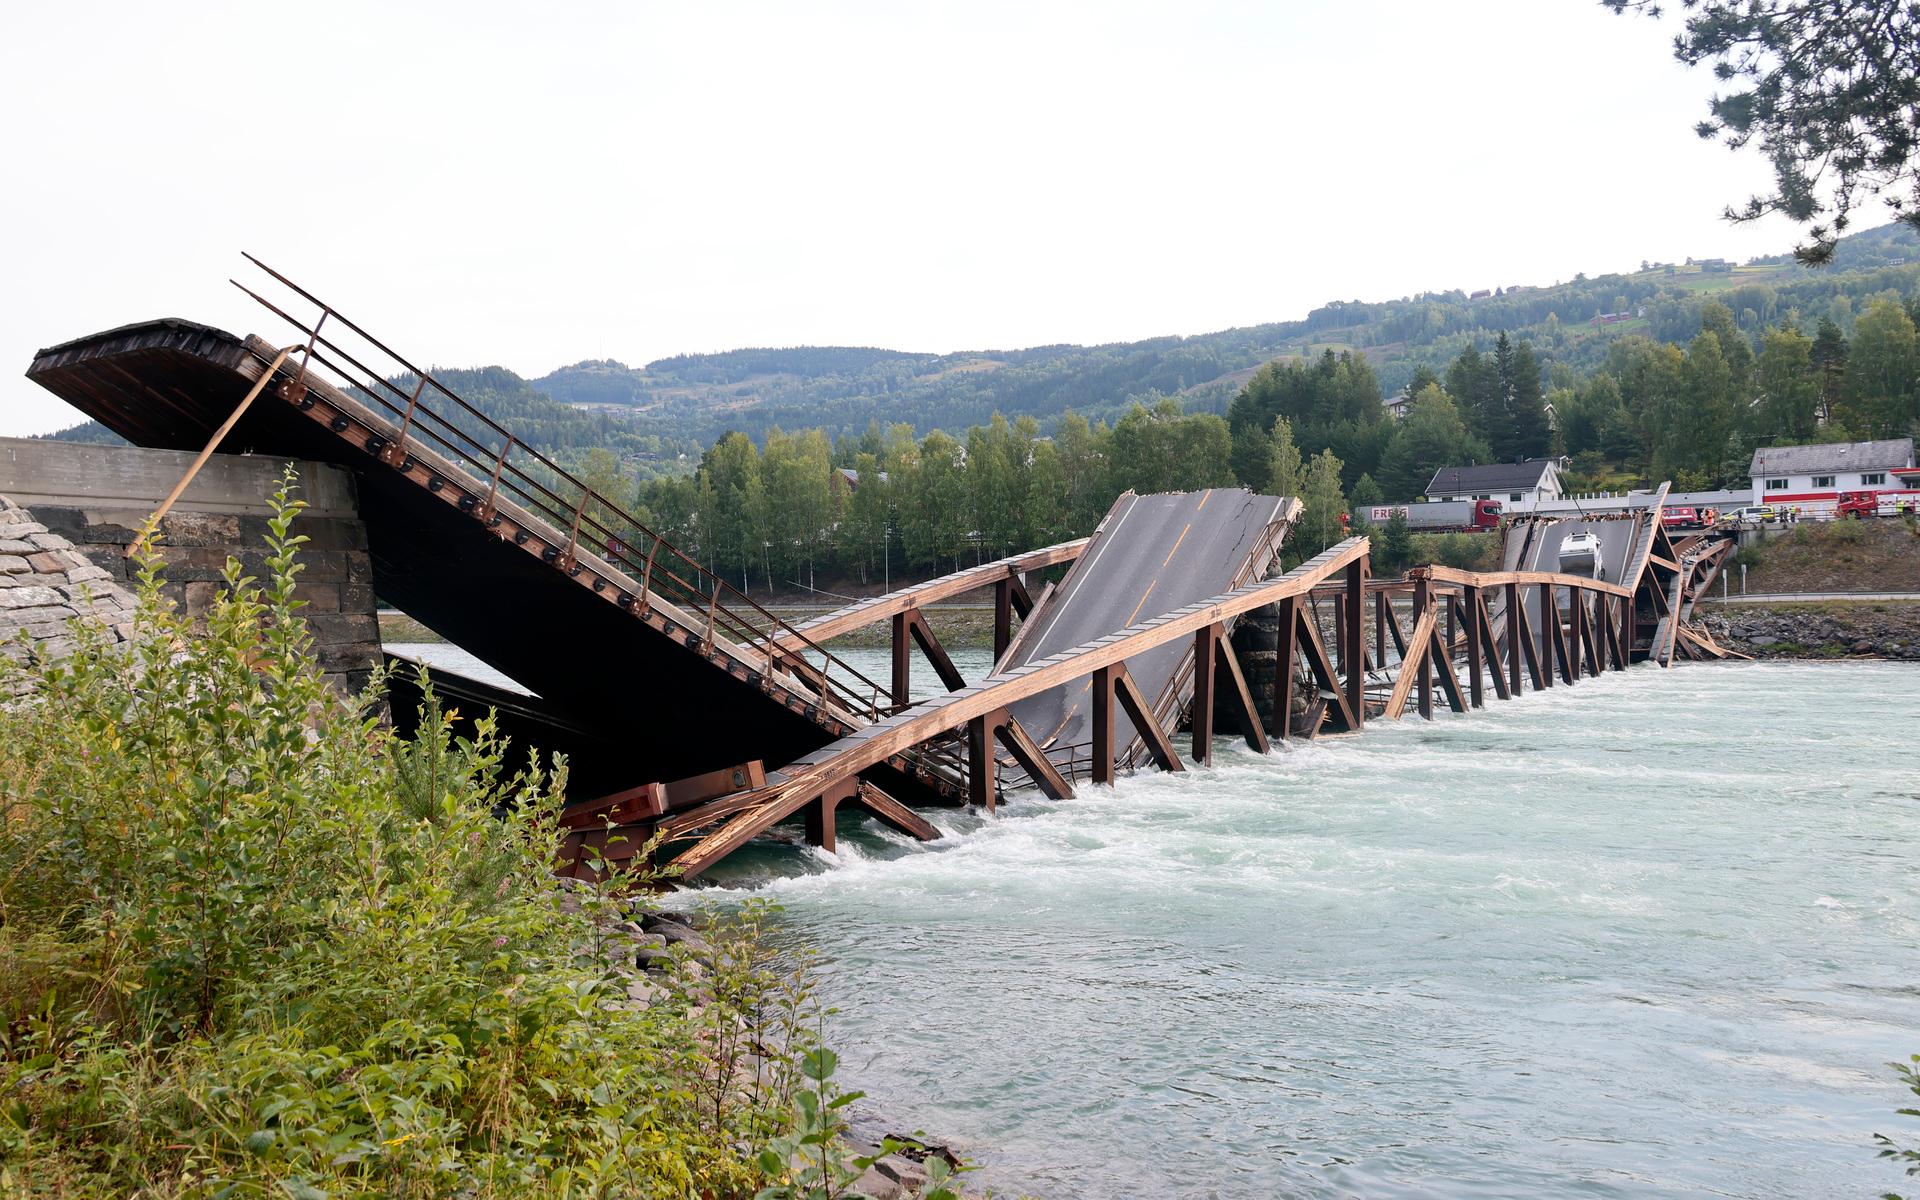 Trettenbron är en bro byggd i trä som finns i norska Gudbrandsdalen, en dalgång som ligger mellan Lillehammer och Lesja kommun. Bild: Geir Olsen